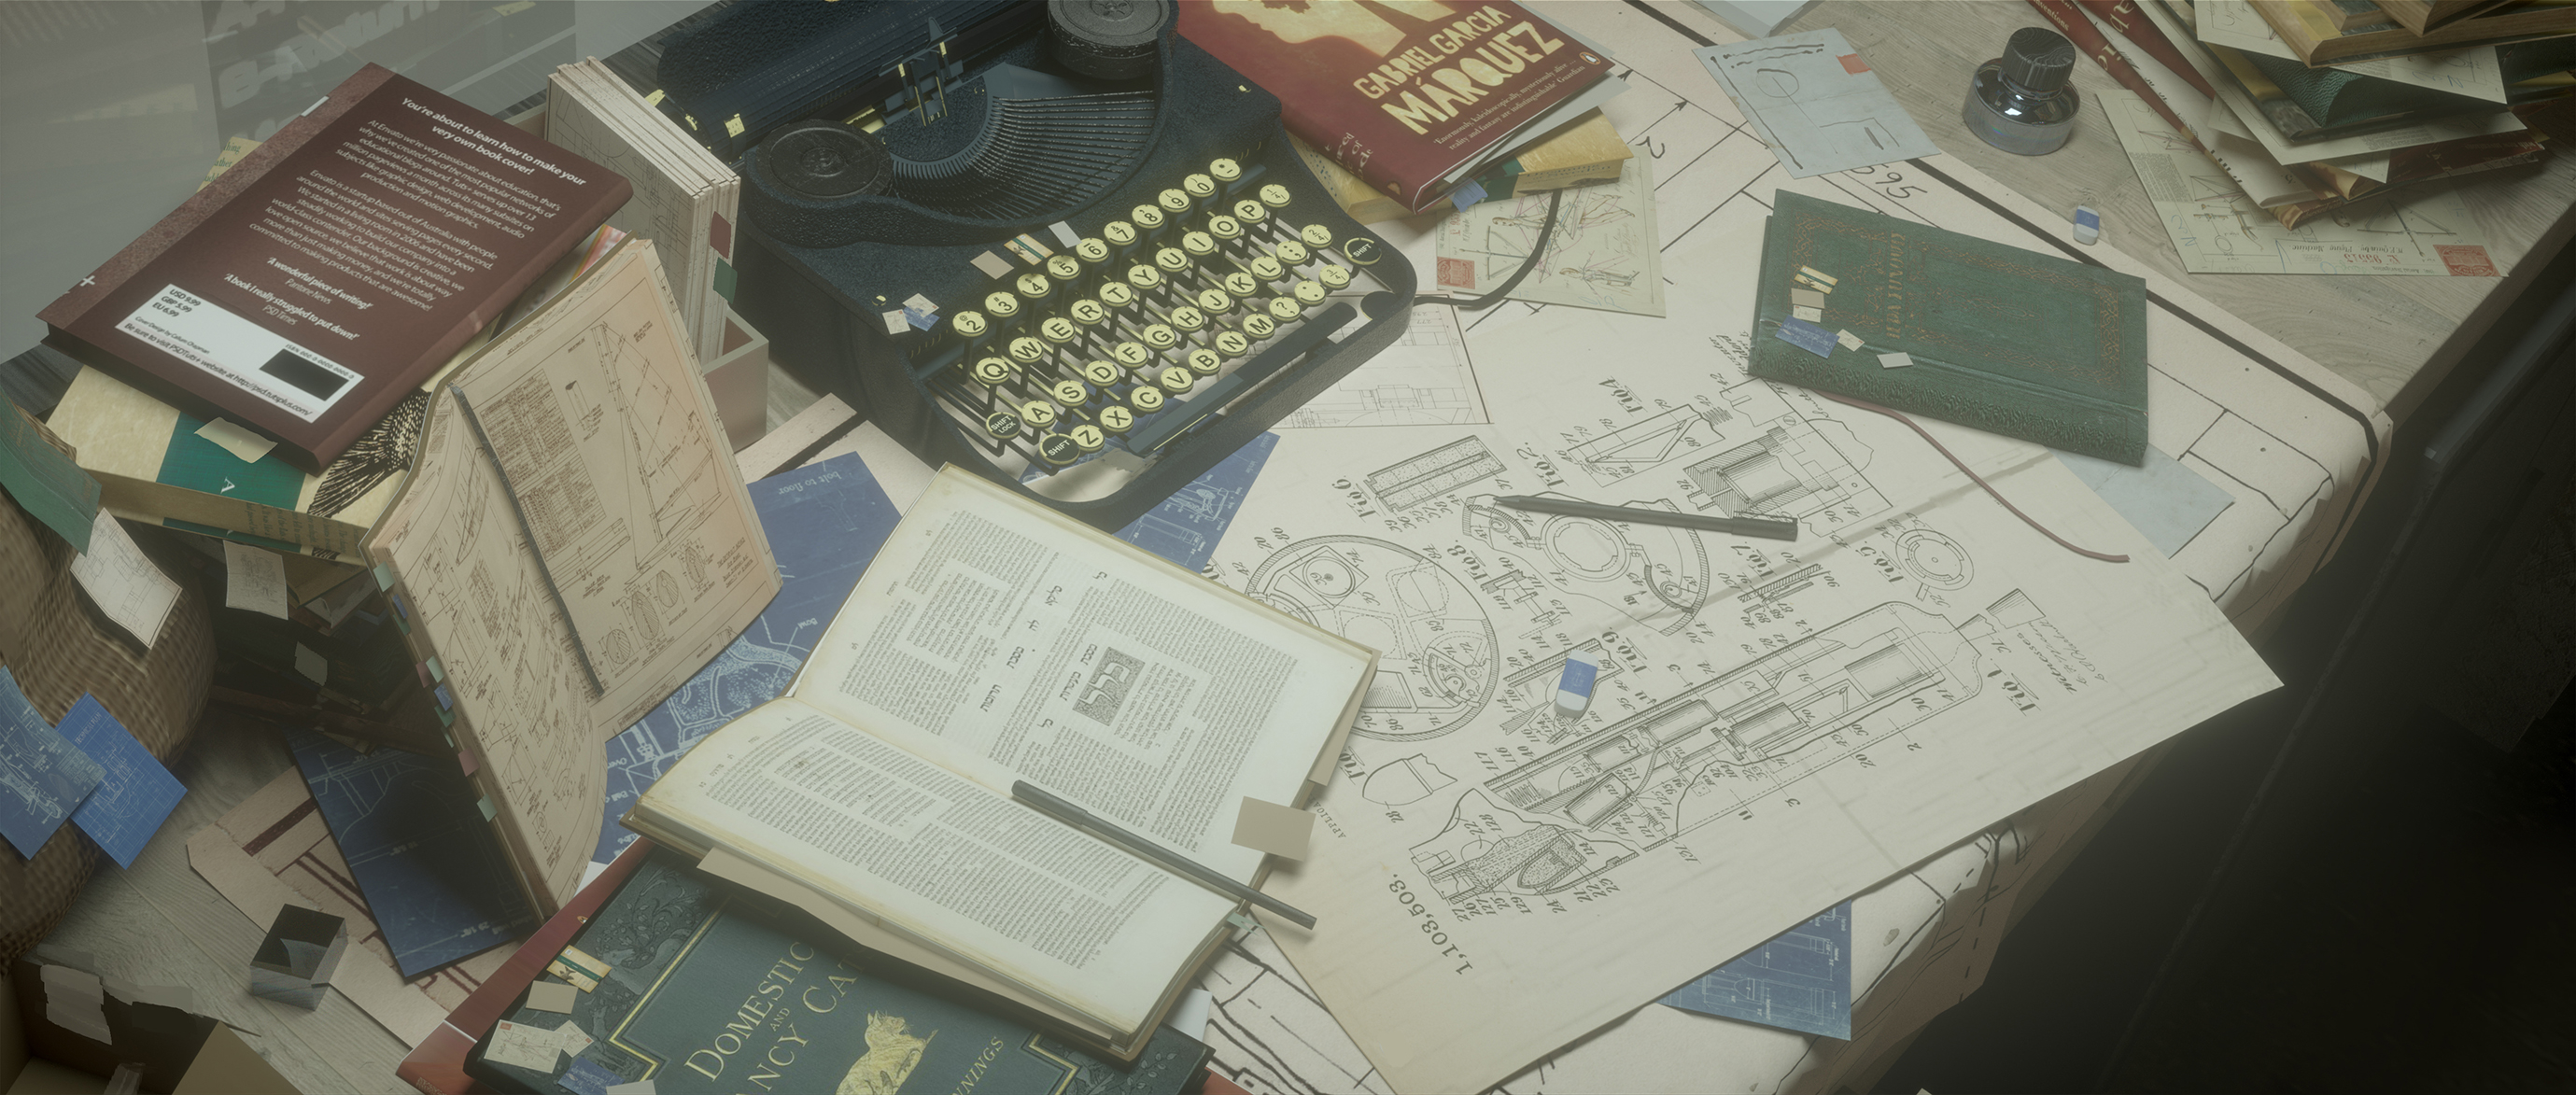 typewriter, anime, original, book, schematic